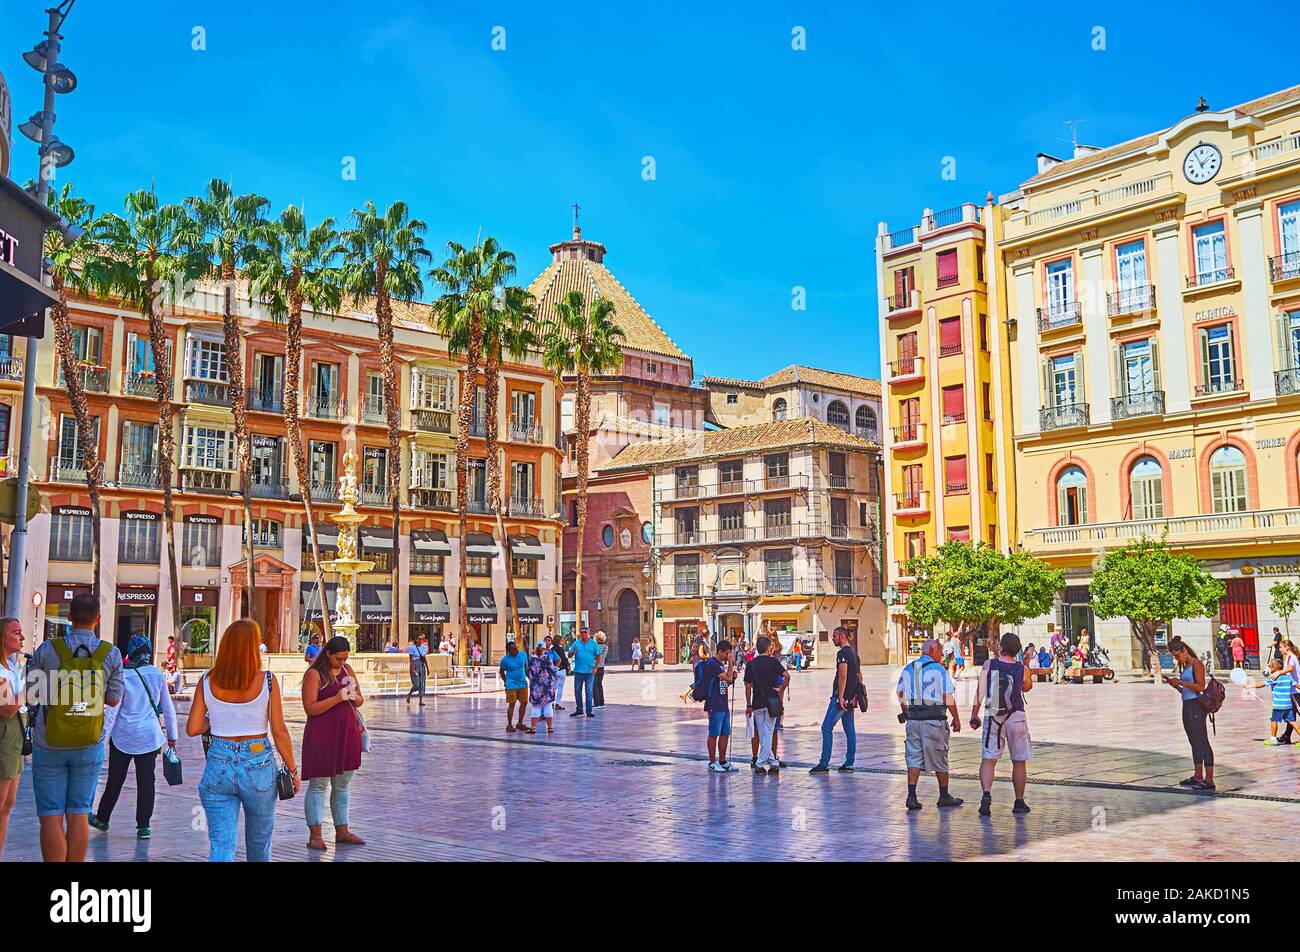 MALAGA, SPANIEN - 26. SEPTEMBER 2019: Das Ensemble von der Plaza de la Constitucion (Platz der Verfassung) mit historischen Villen, Palm Gasse Stockfoto